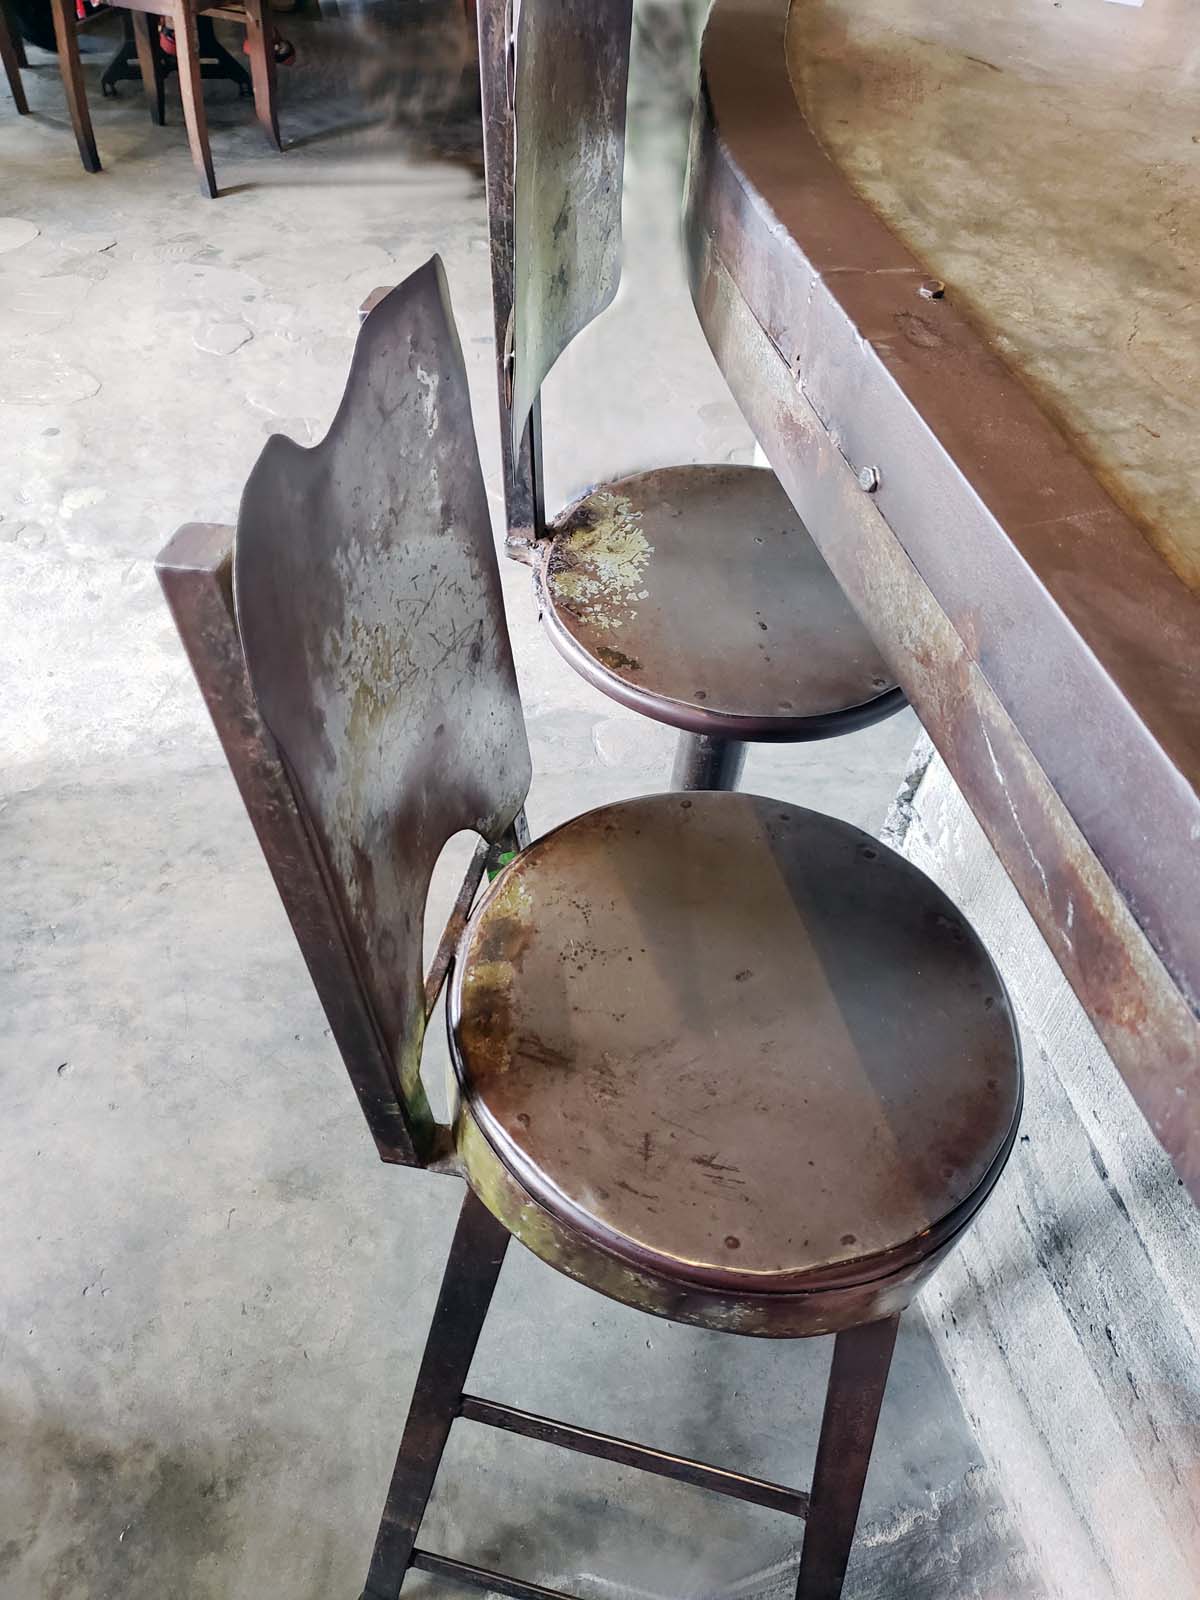 The rustic bar stools.